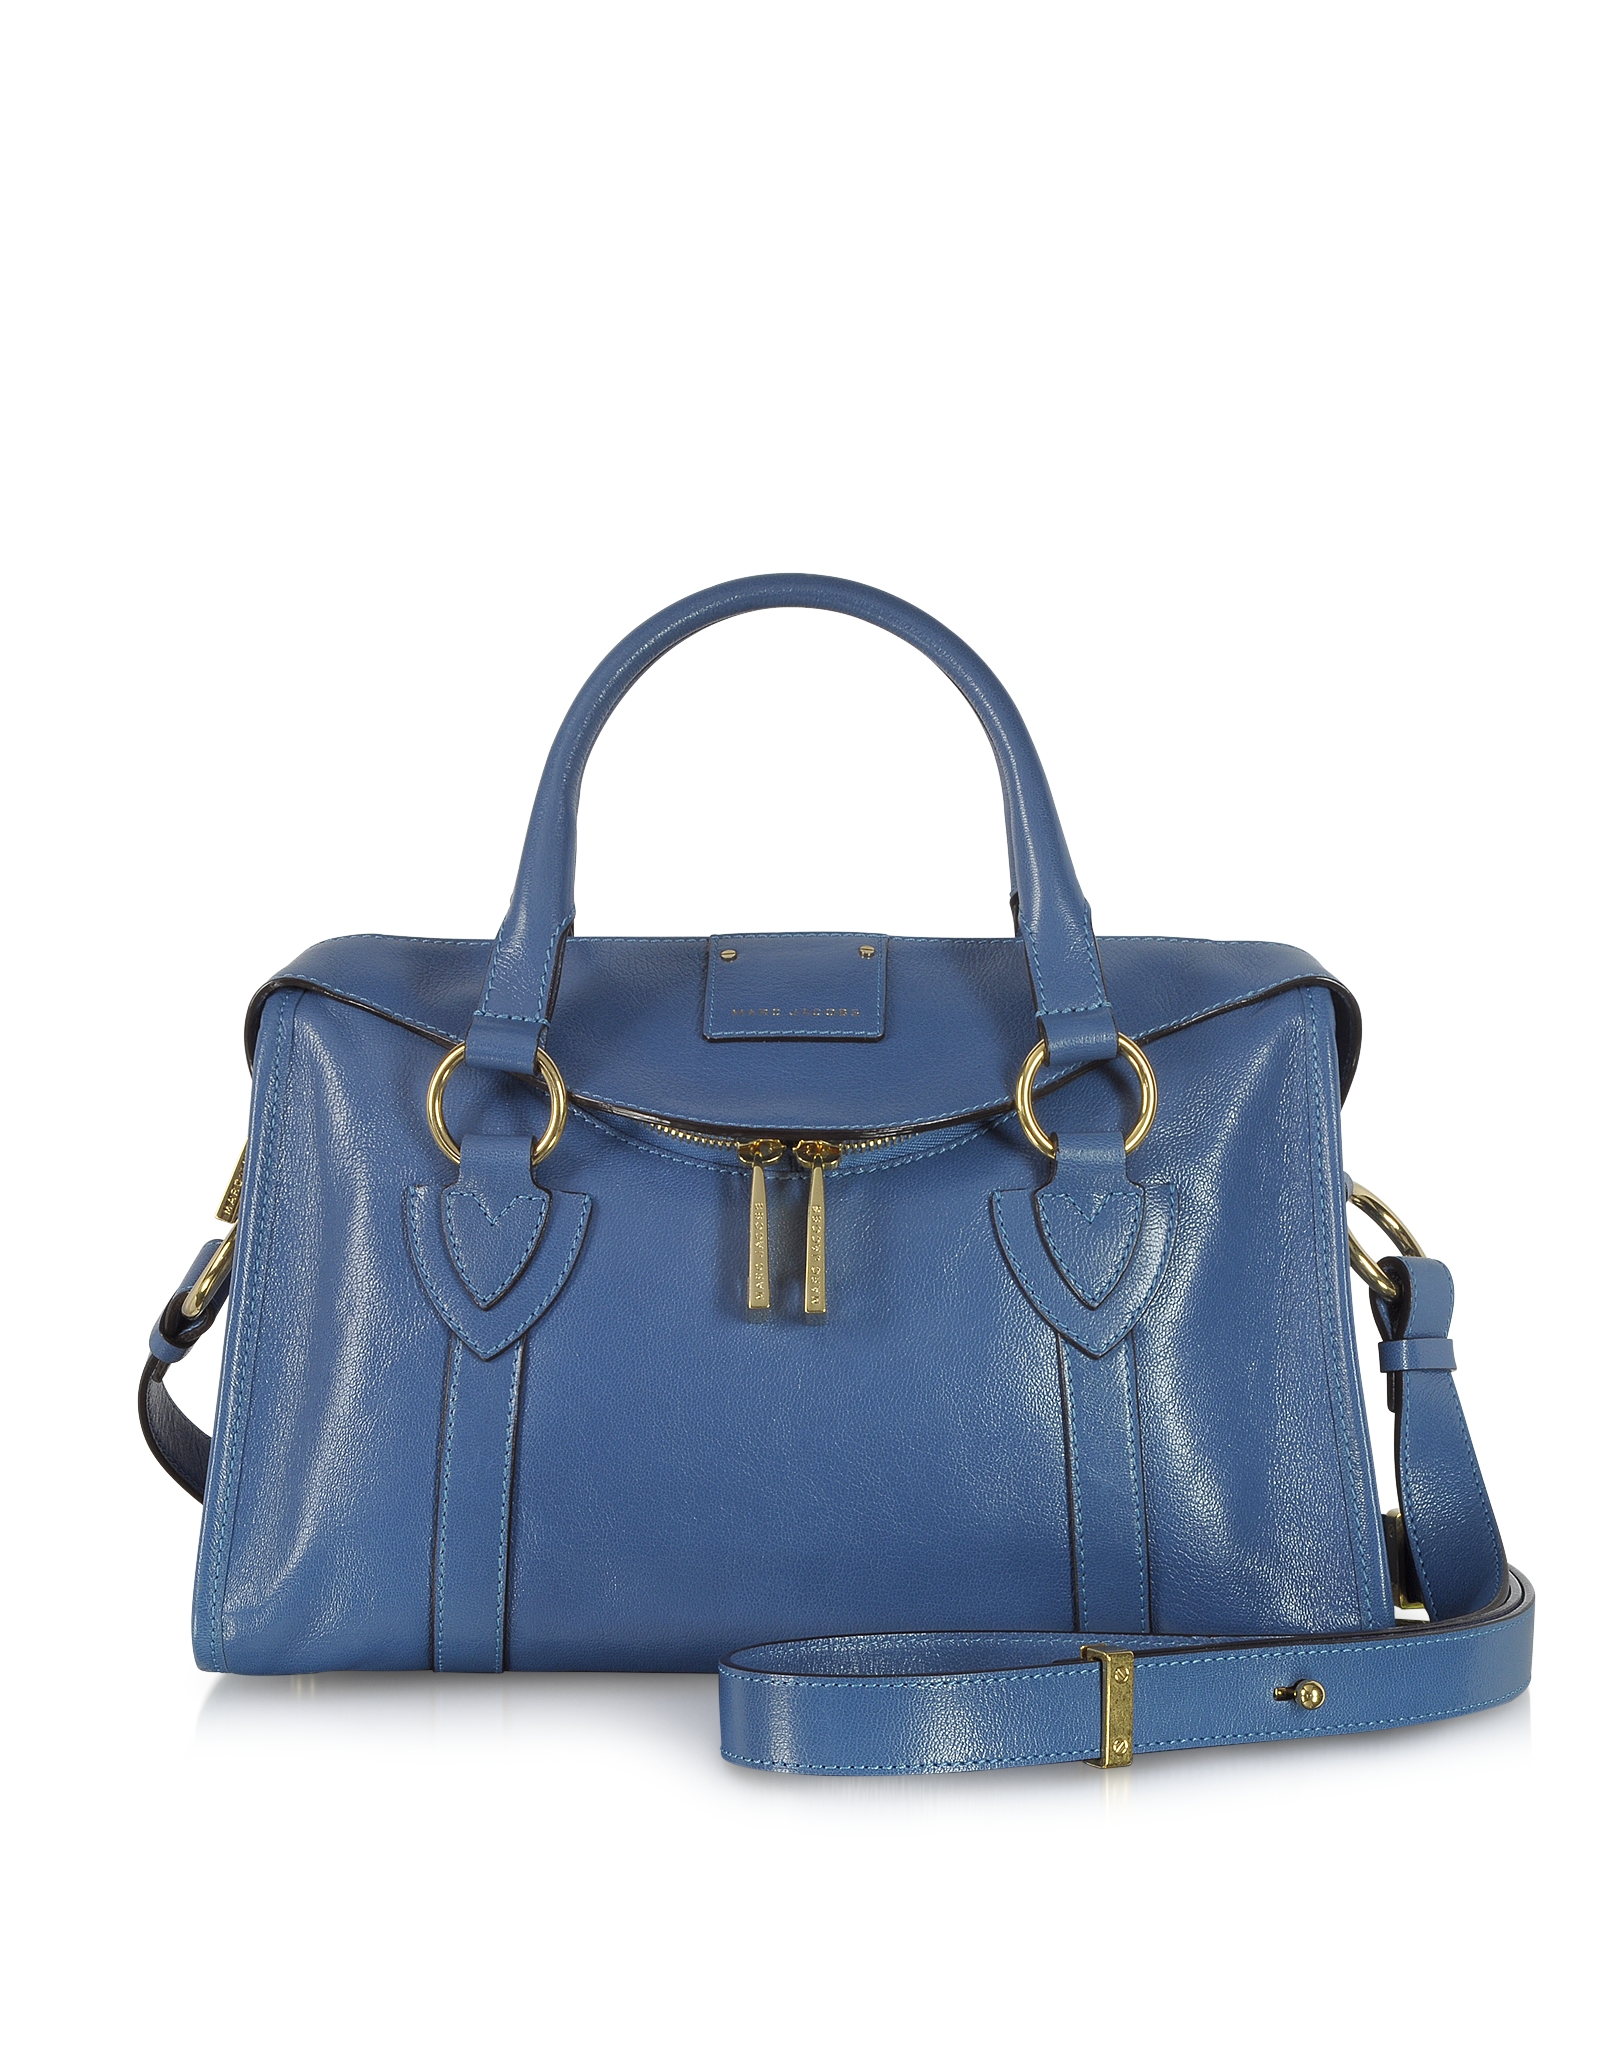 Marc Jacobs Small Fulton Denim Blue Leather Satchel Bag Wshoulder Strap ...